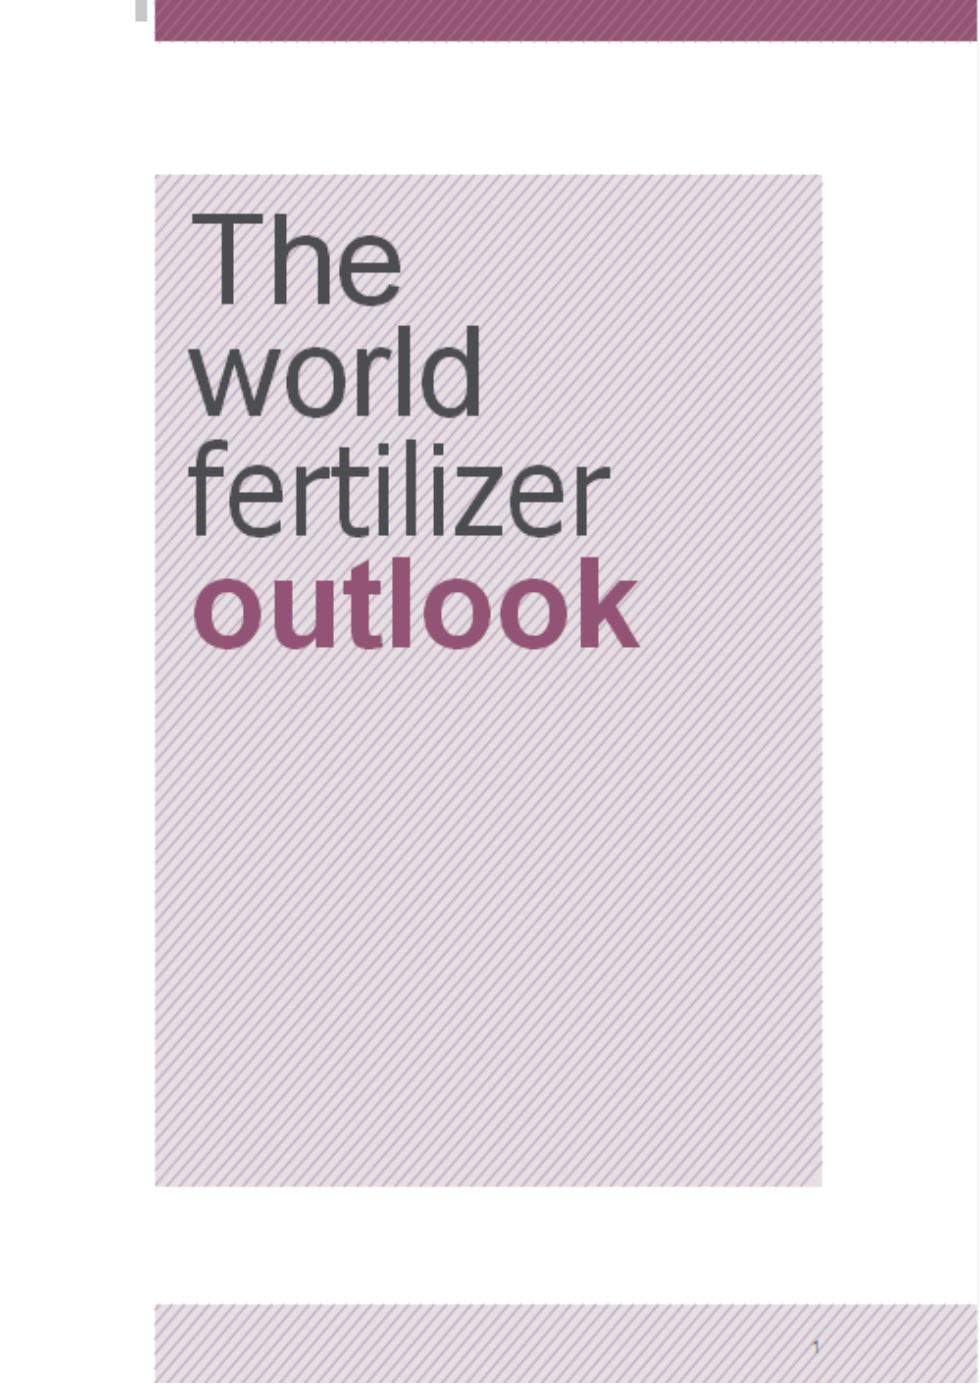 全球肥料发展趋势及2022年展望